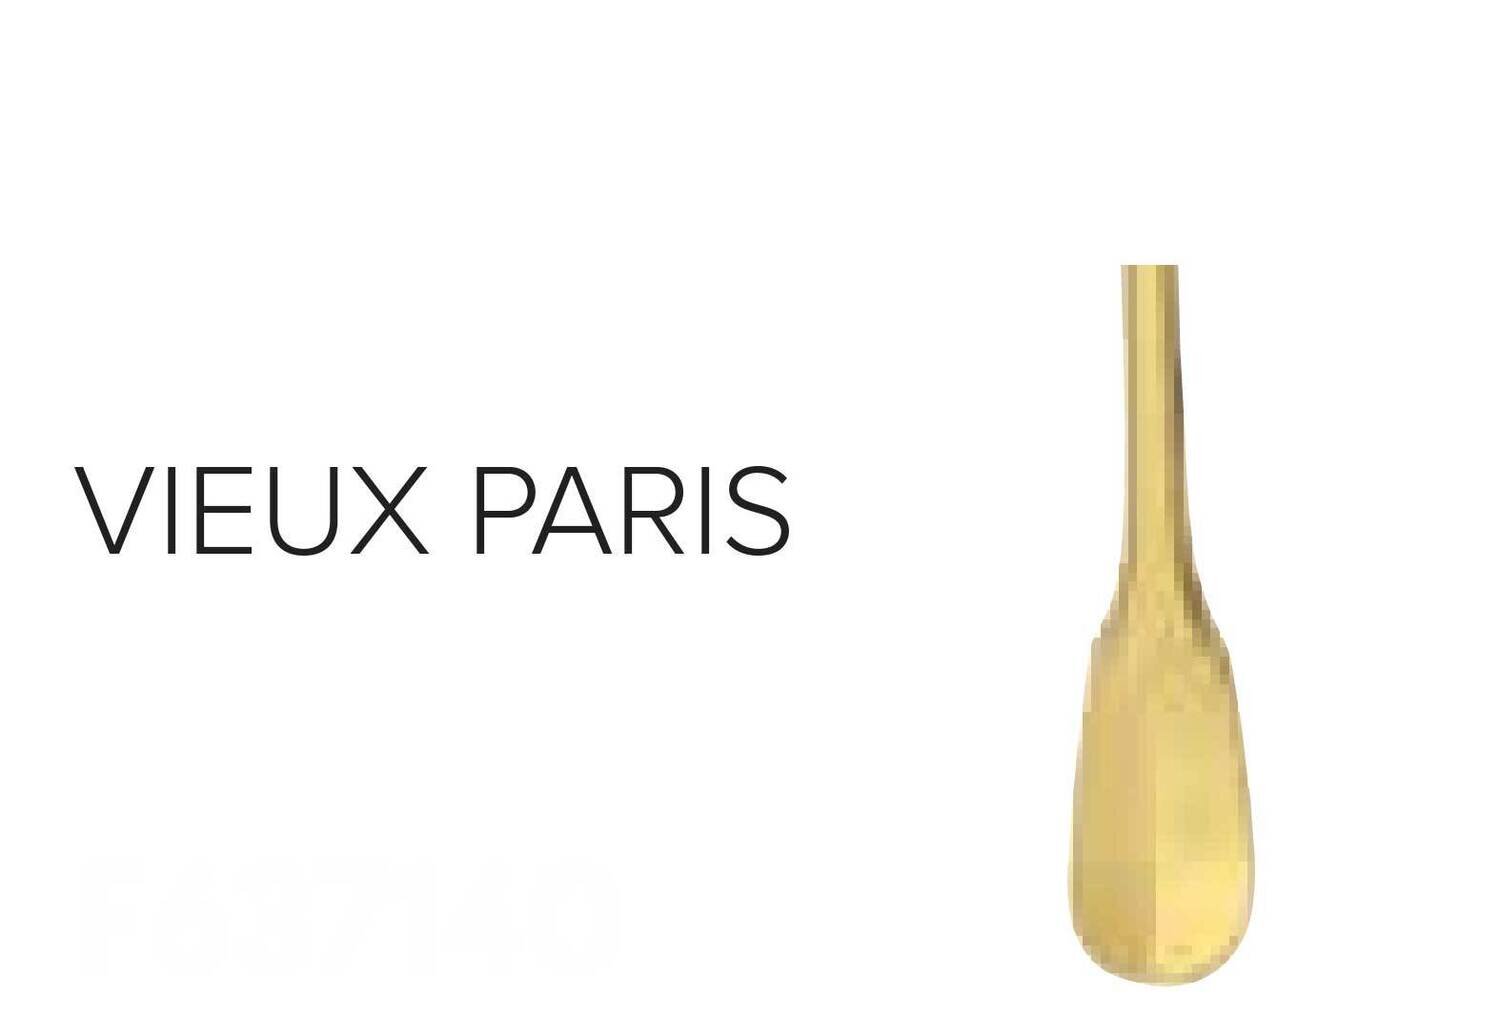 Ercuis Vieux Paris Ice Cream Serving Ladle Gold Plated F657140-49